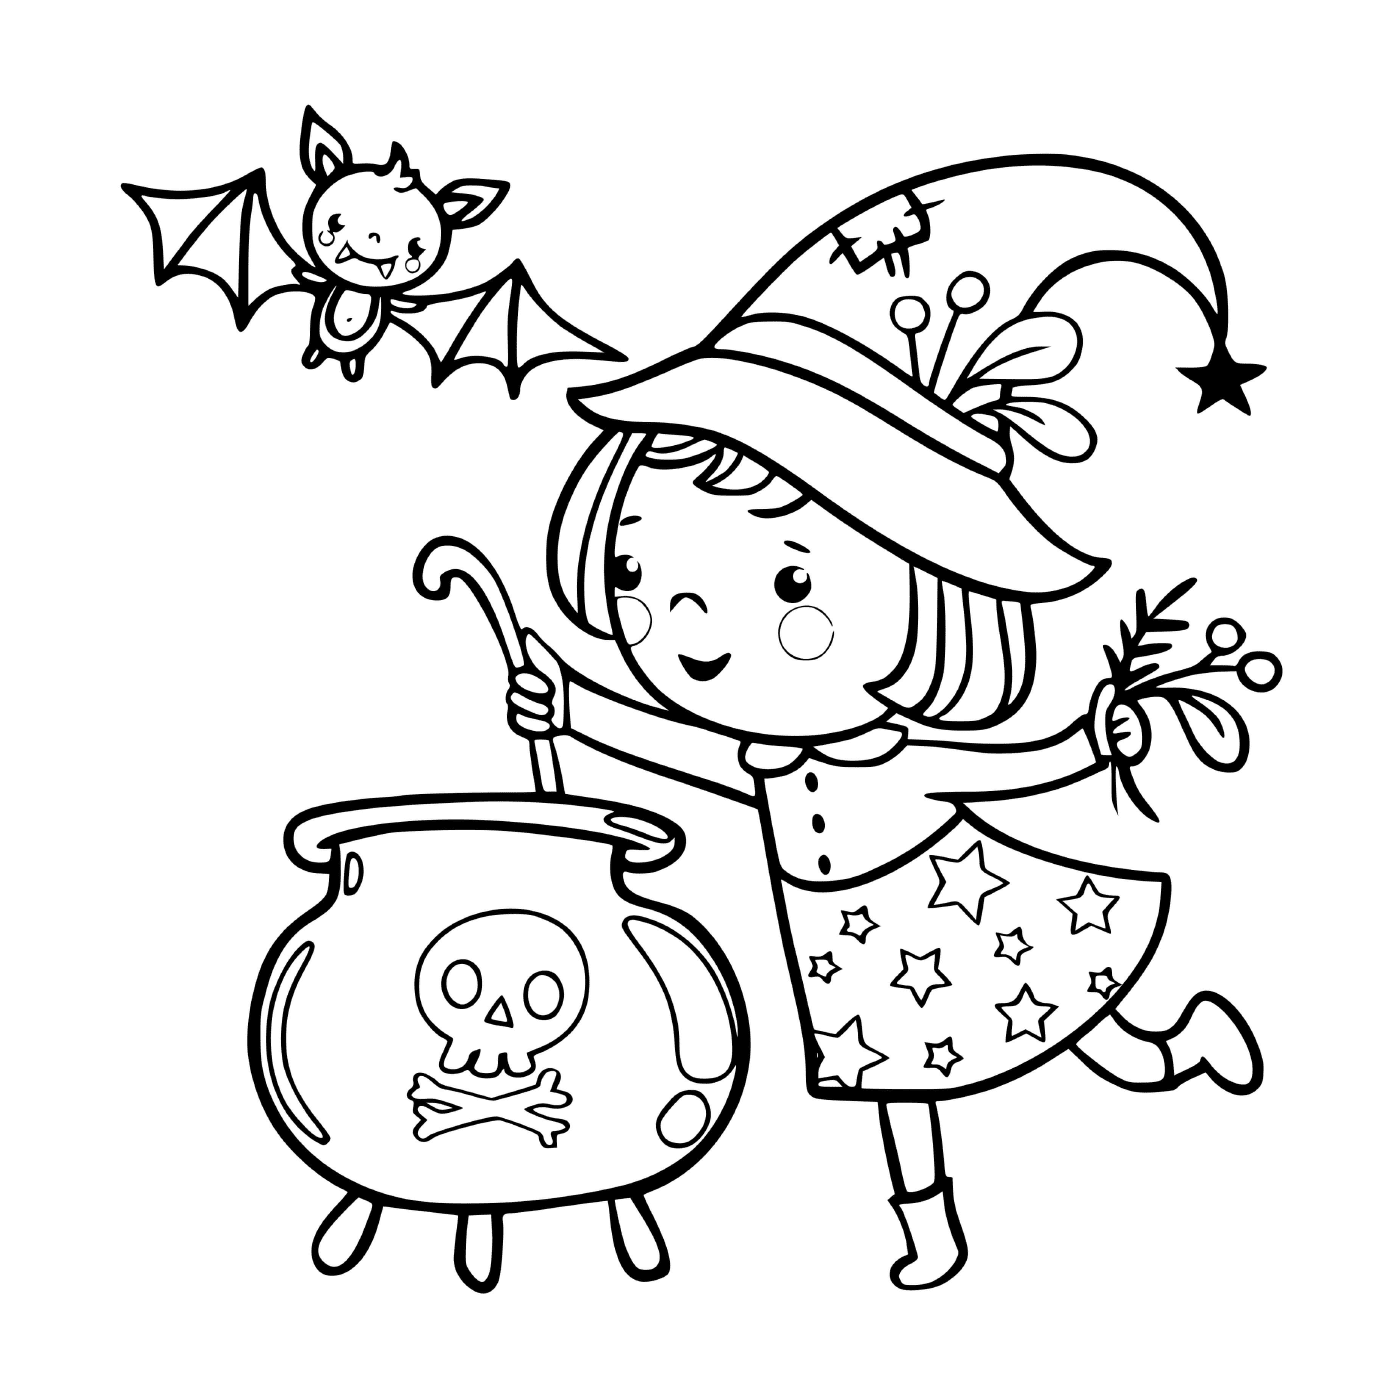  La piccola strega prepara una zuppa magica 